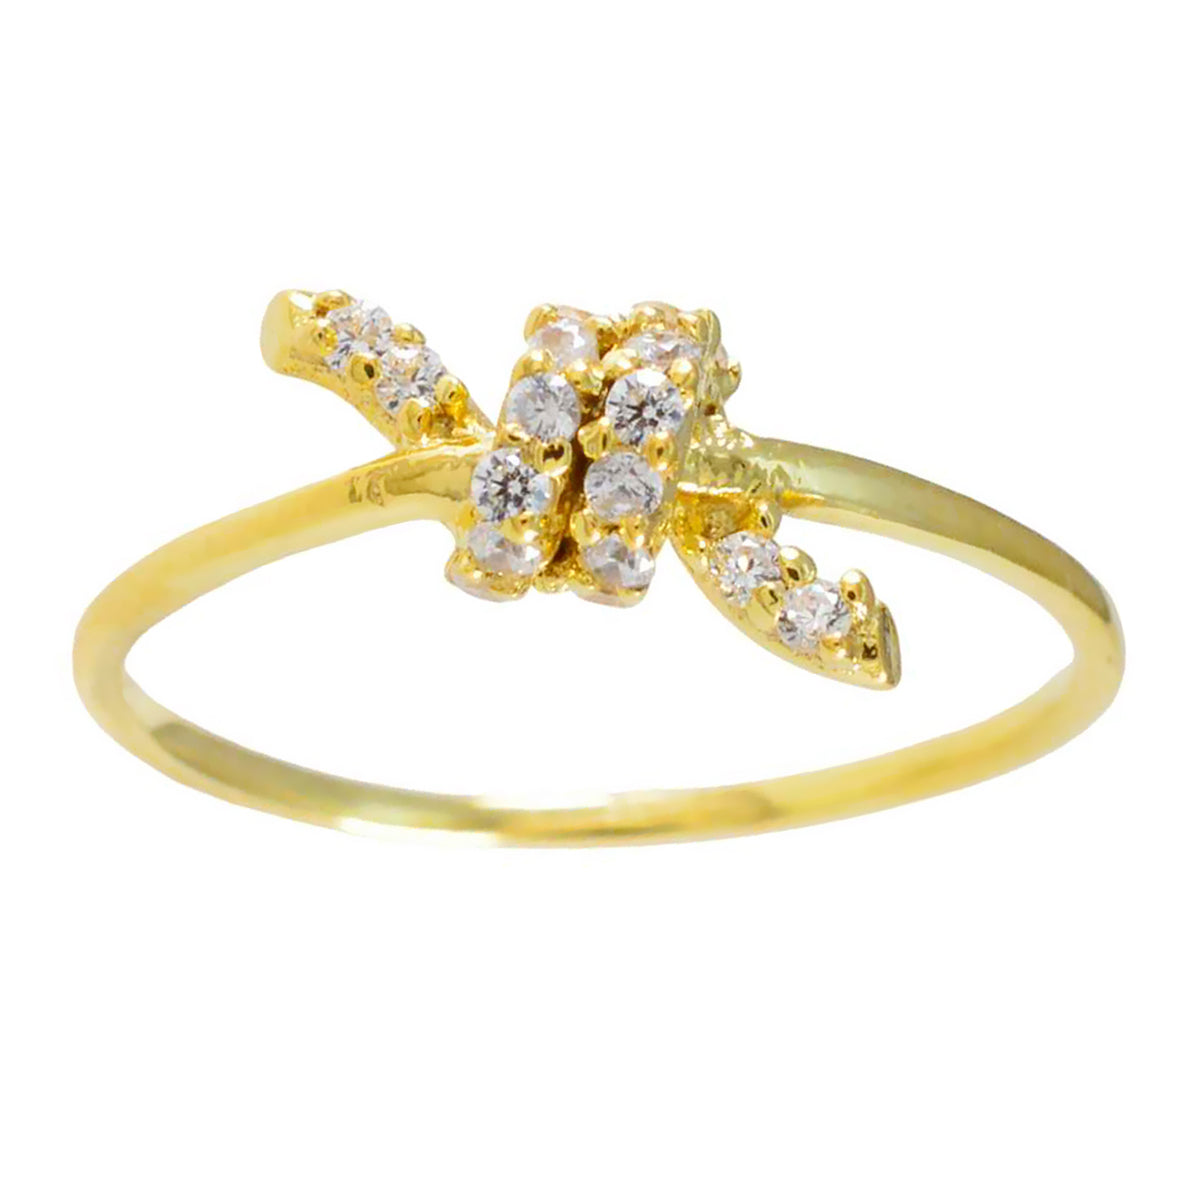 Riyo suministra anillo de plata con anillo de ajuste de punta de forma redonda de piedra cz blanca chapado en oro amarillo